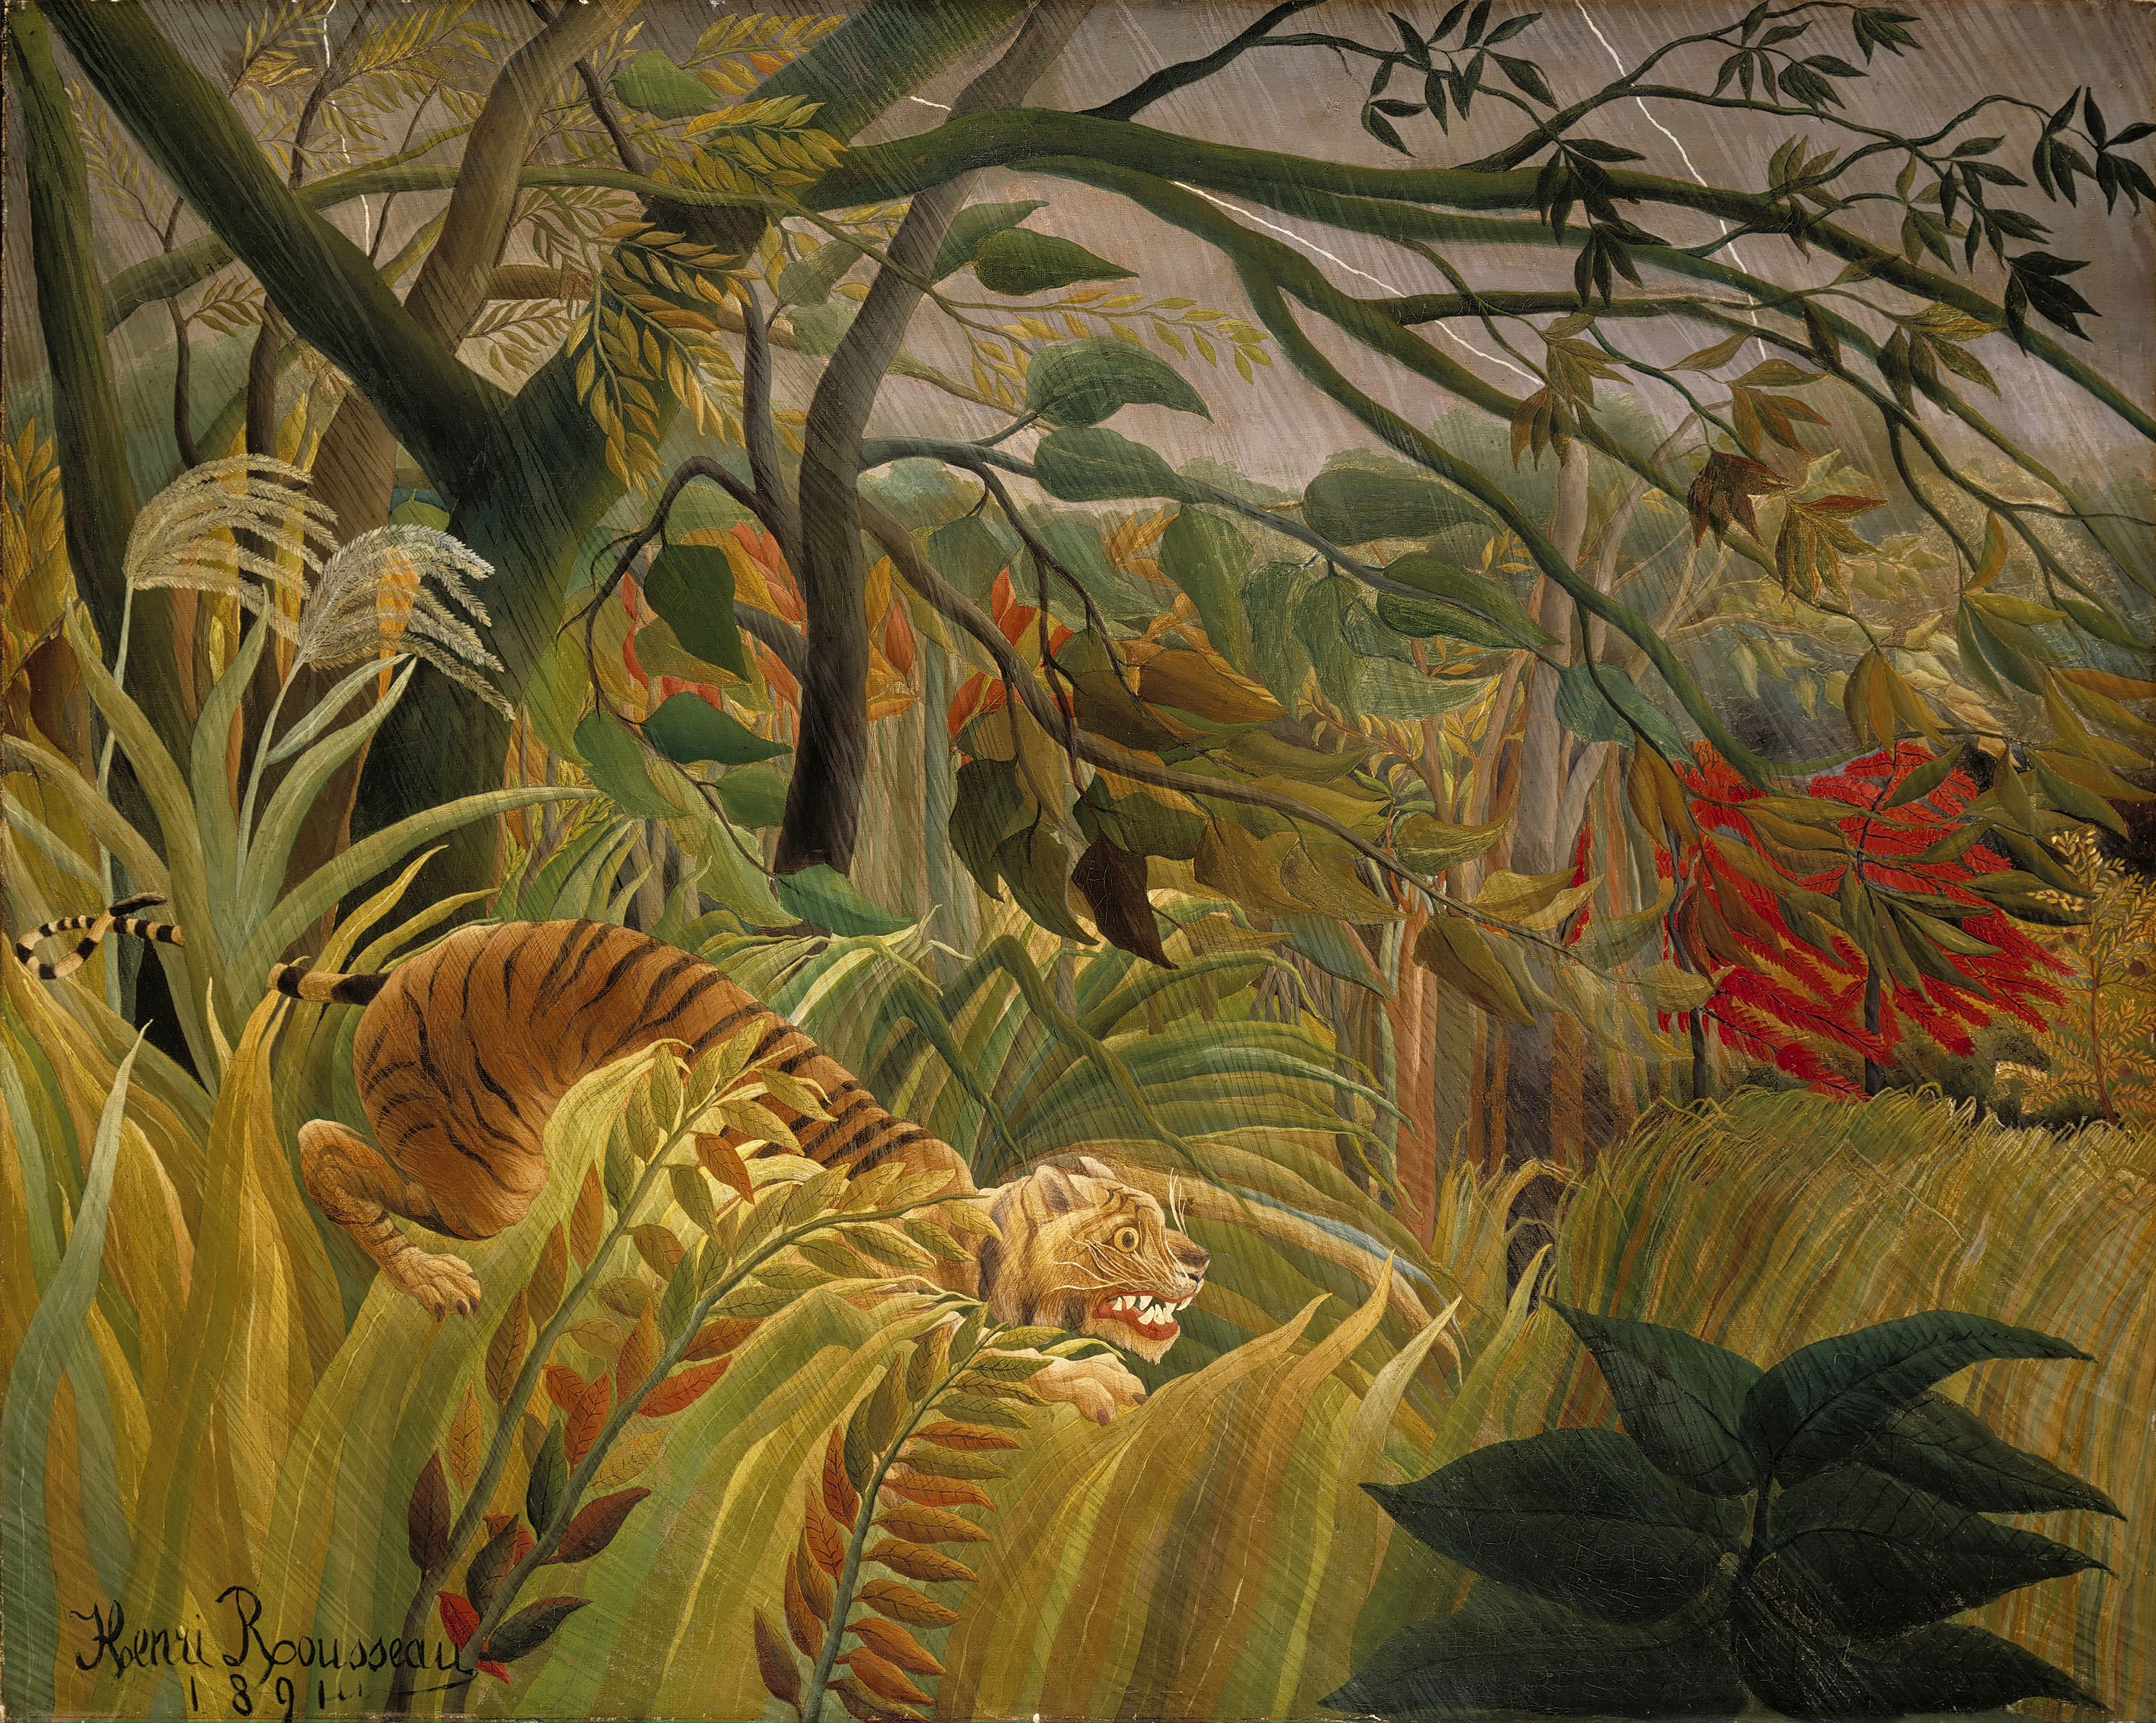 Egy meglepett tigris a trópusi viharban by Henri Rousseau - 1891 - 129.8 x 161.9 cm 